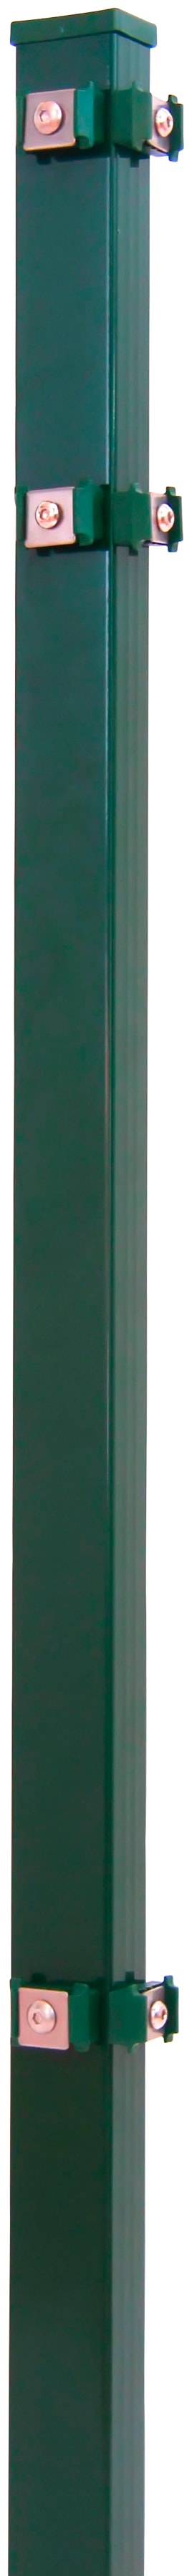 PEDDY SHIELD Eckpfosten 4x4x150 cm, für Ein- und Doppelstabmatten